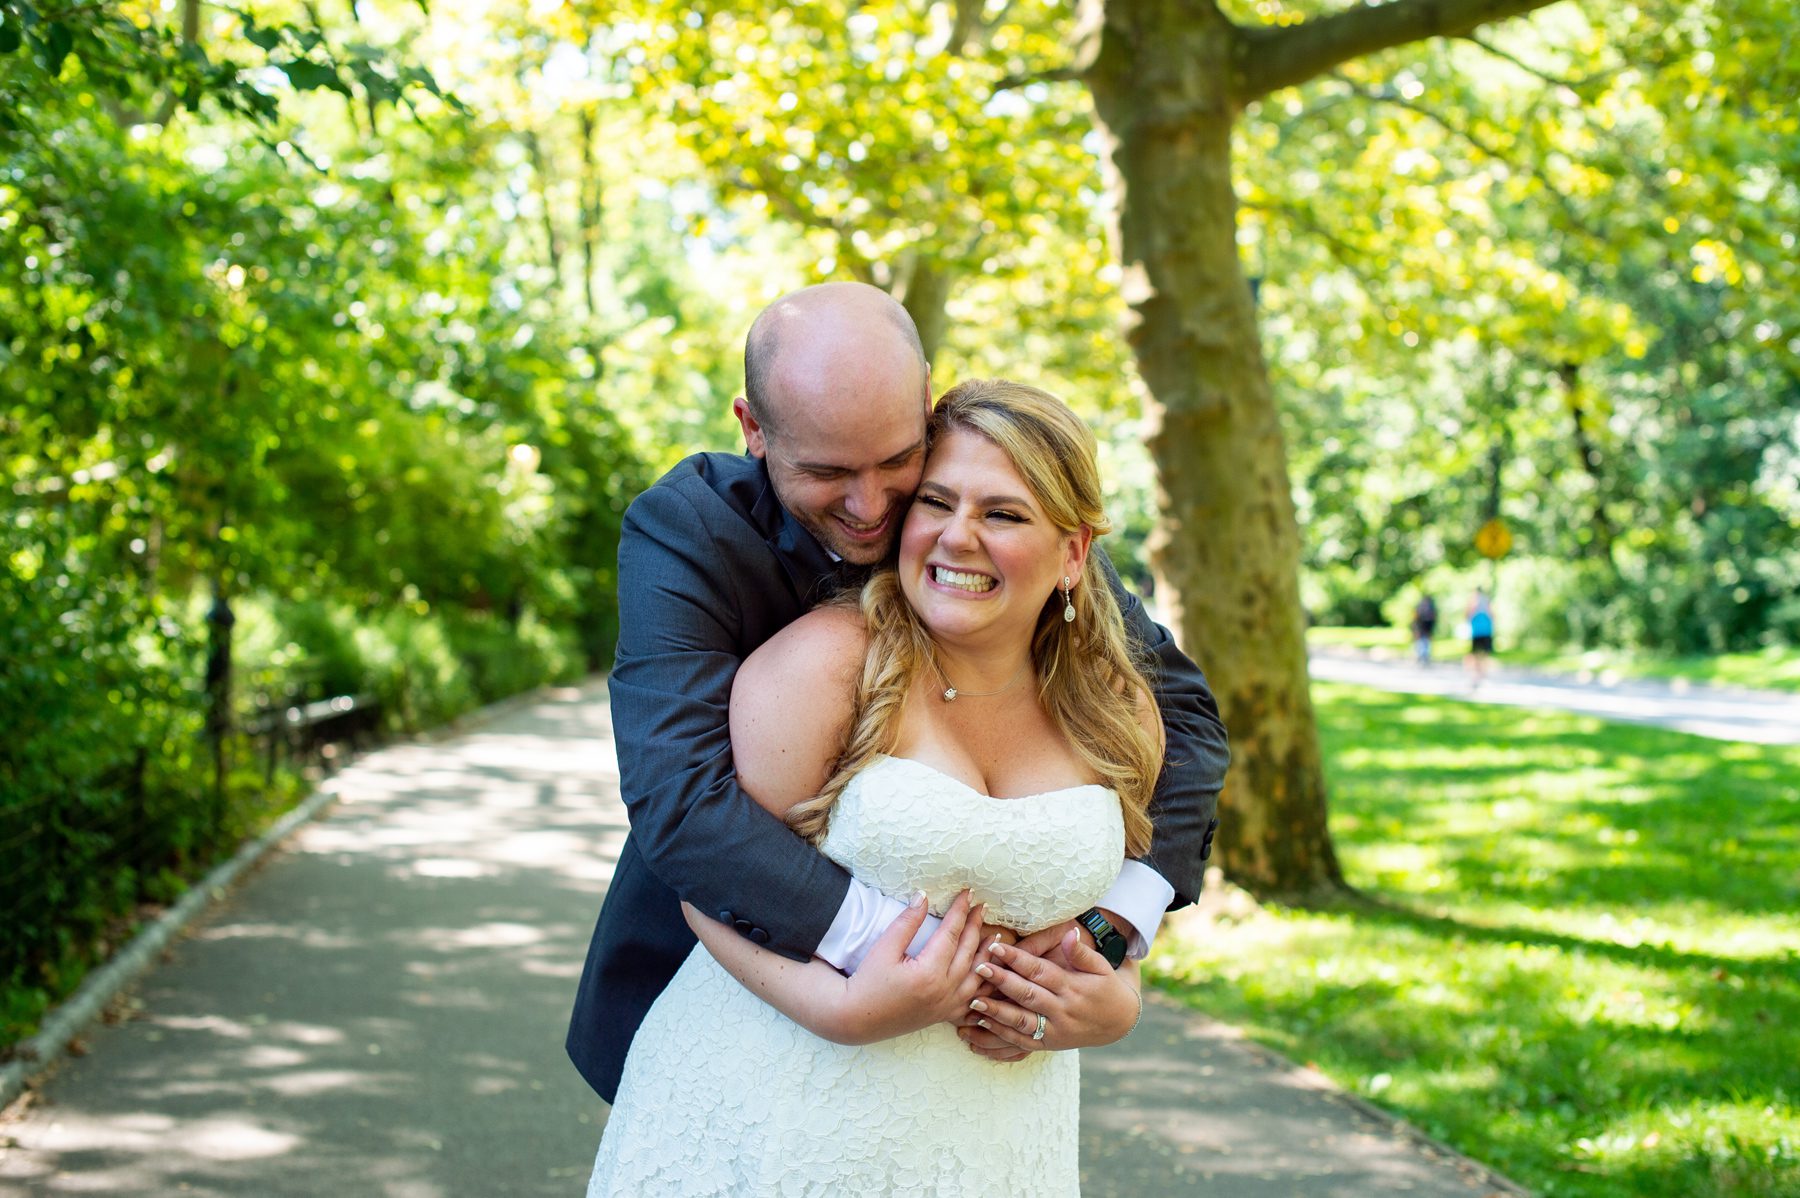 Wedding Photos in Central Park 